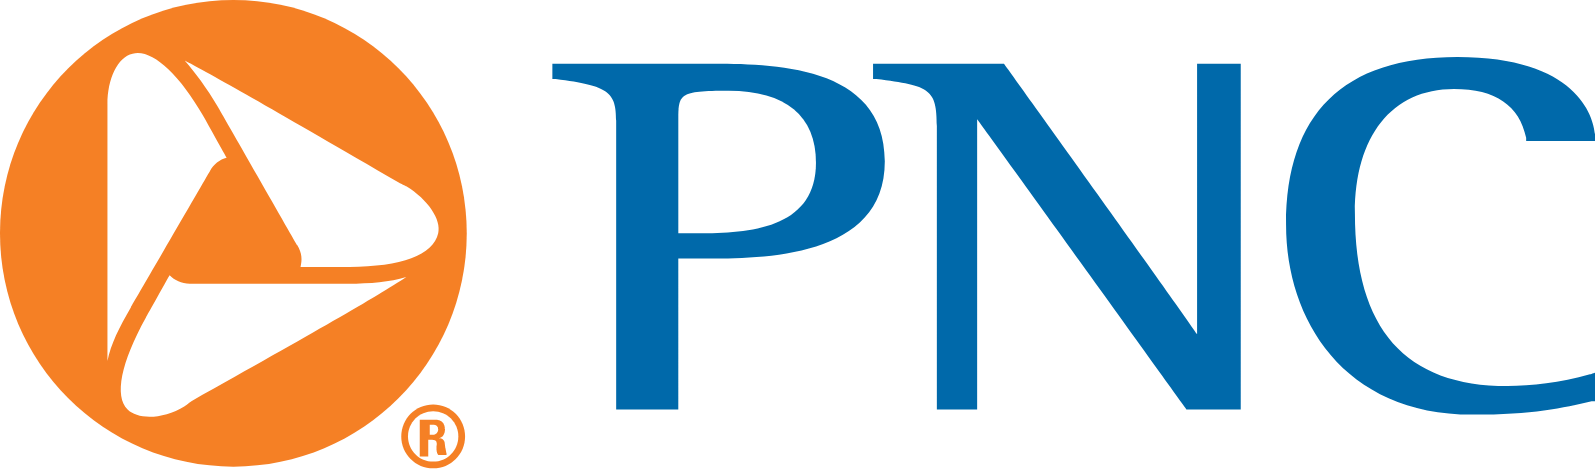 PNC Financial Services logo large (transparent PNG)